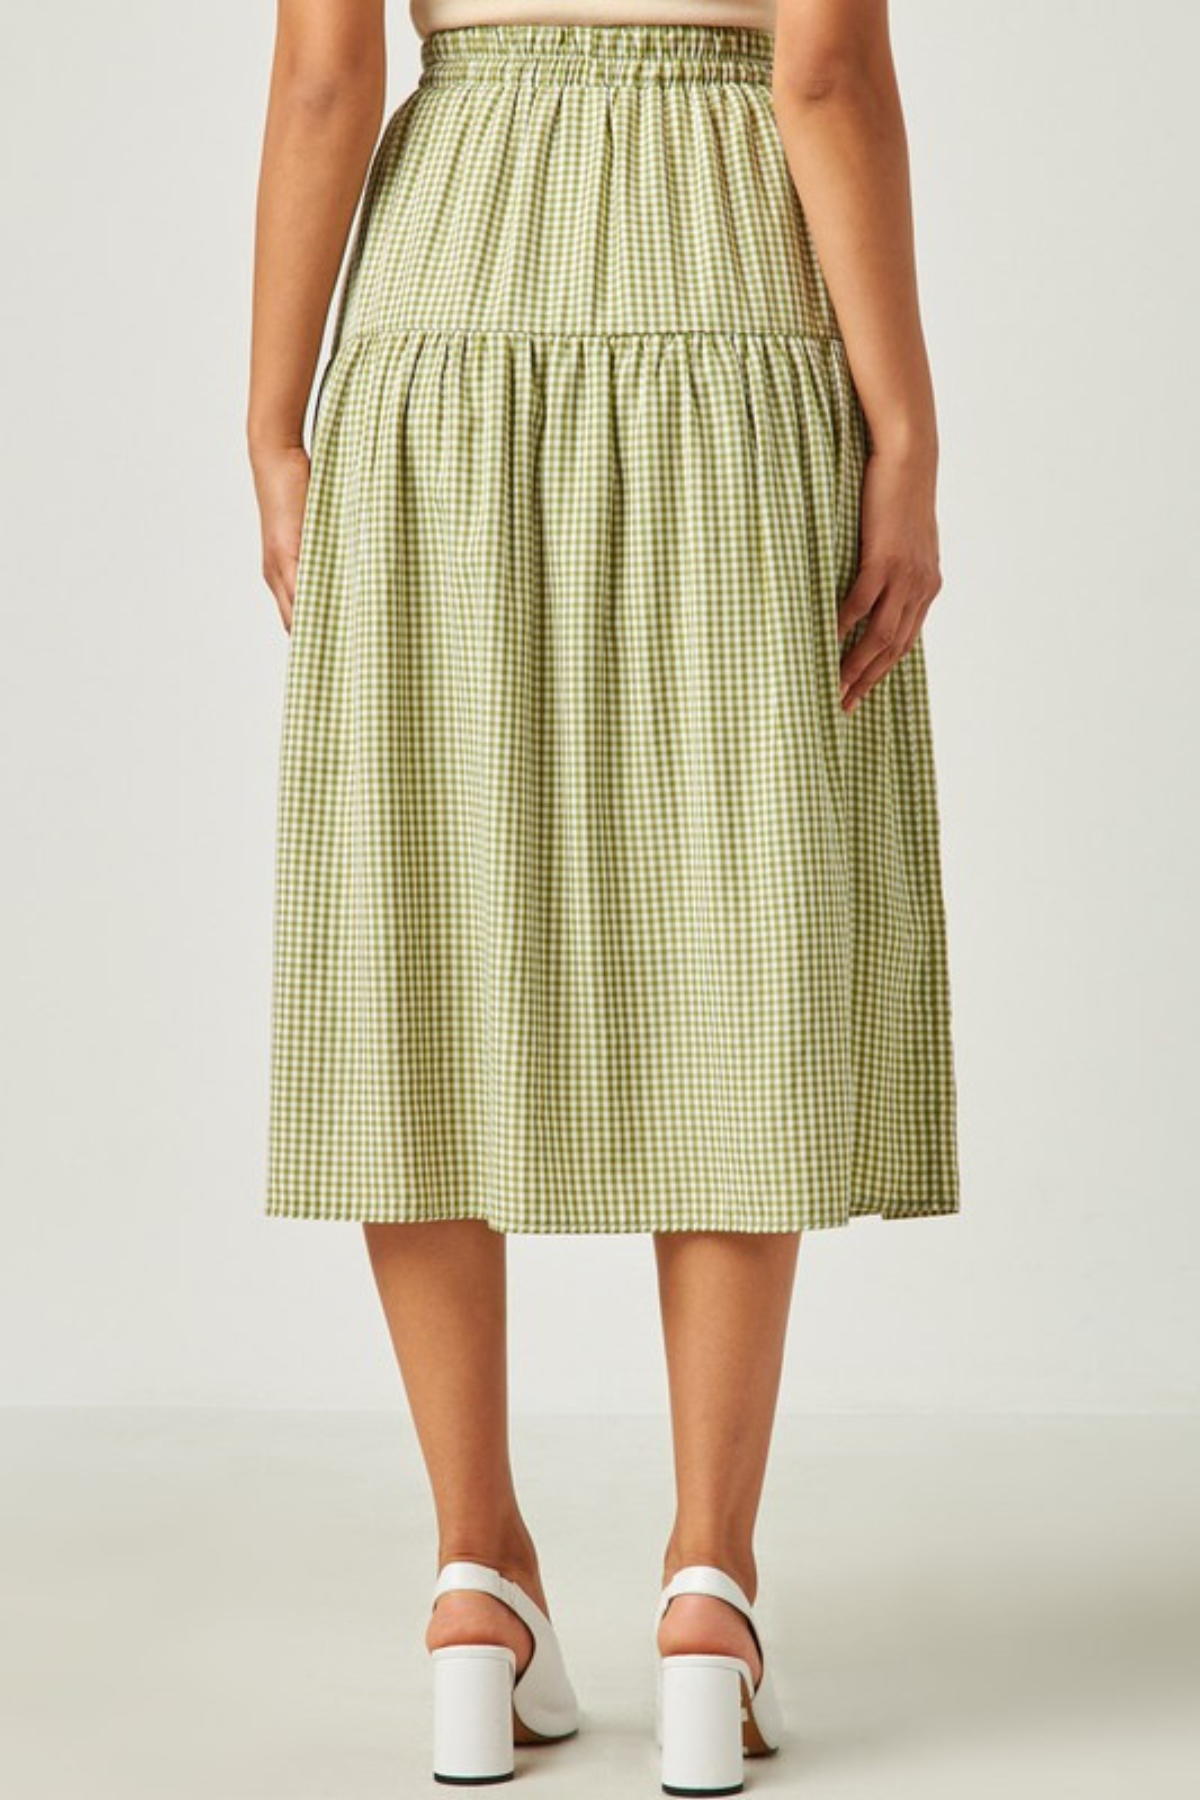 Cece Checkered Skirt